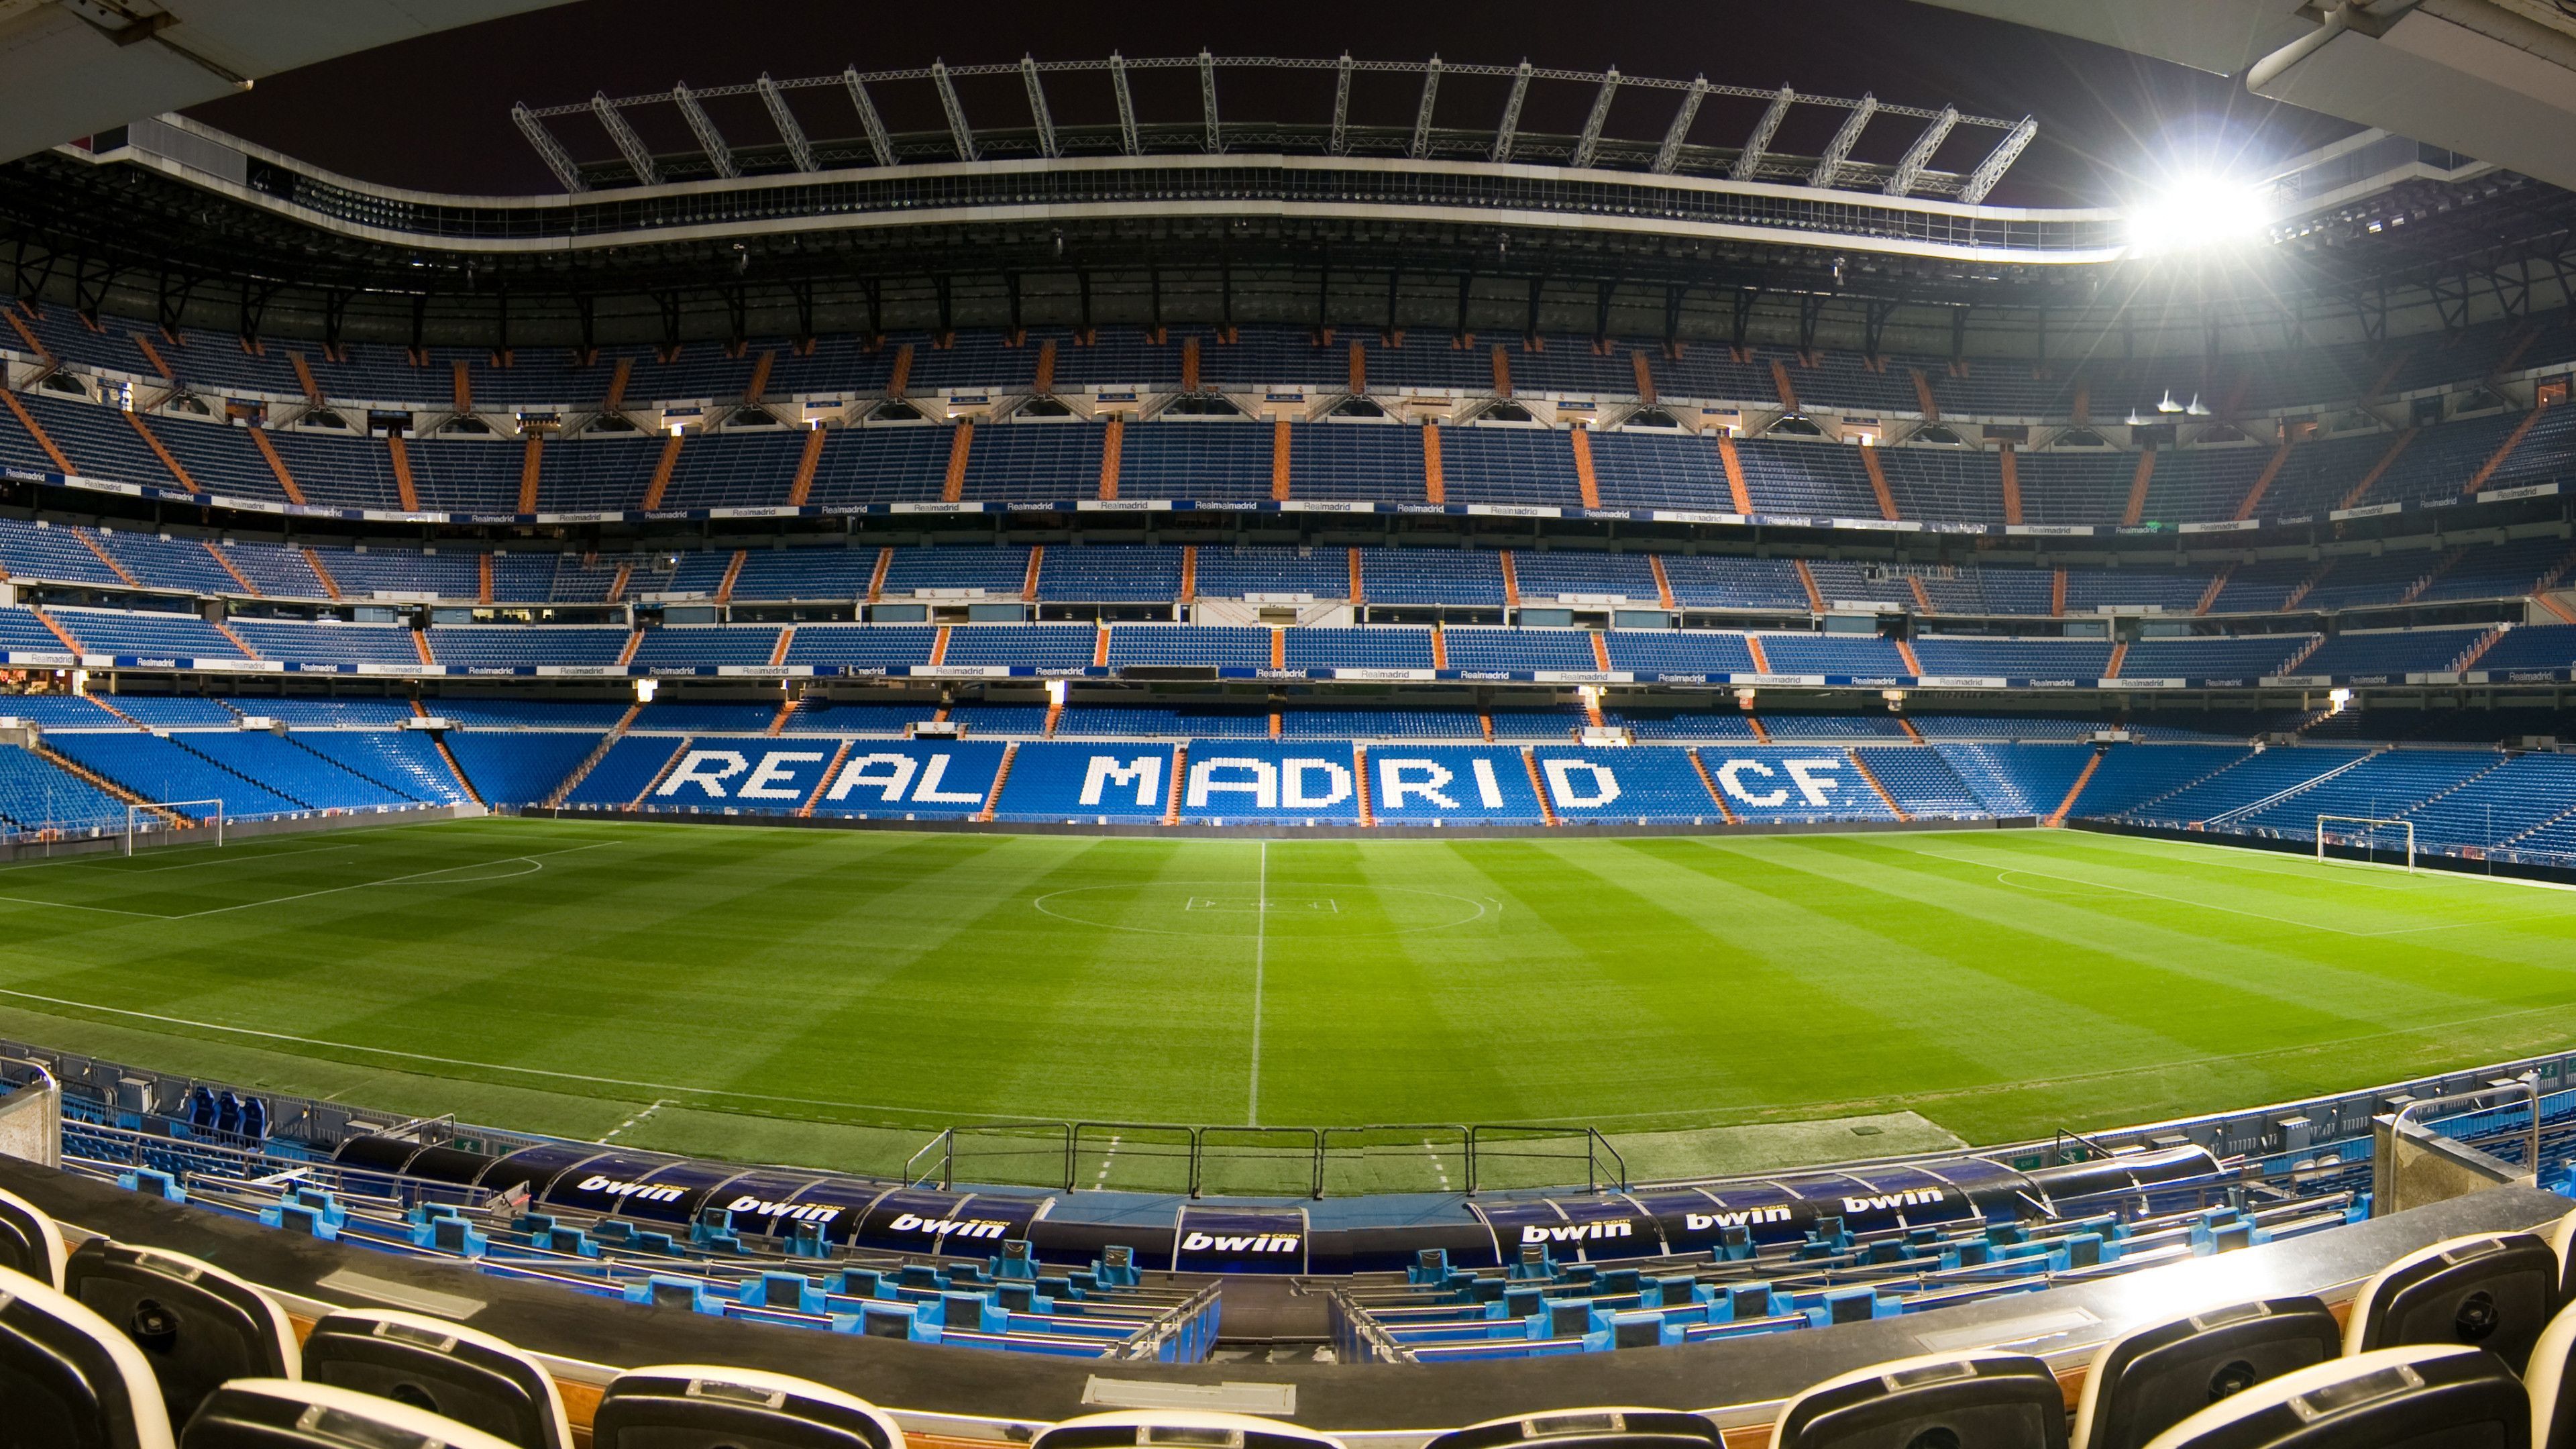 Nếu bạn là một fan hâm mộ Real Madrid, bạn không thể bỏ qua những bức tranh nền PC 4K đẹp mắt này! Real Madrid Wallpapers sẽ khiến cho màn hình máy tính của bạn trở nên sống động hơn bao giờ hết.